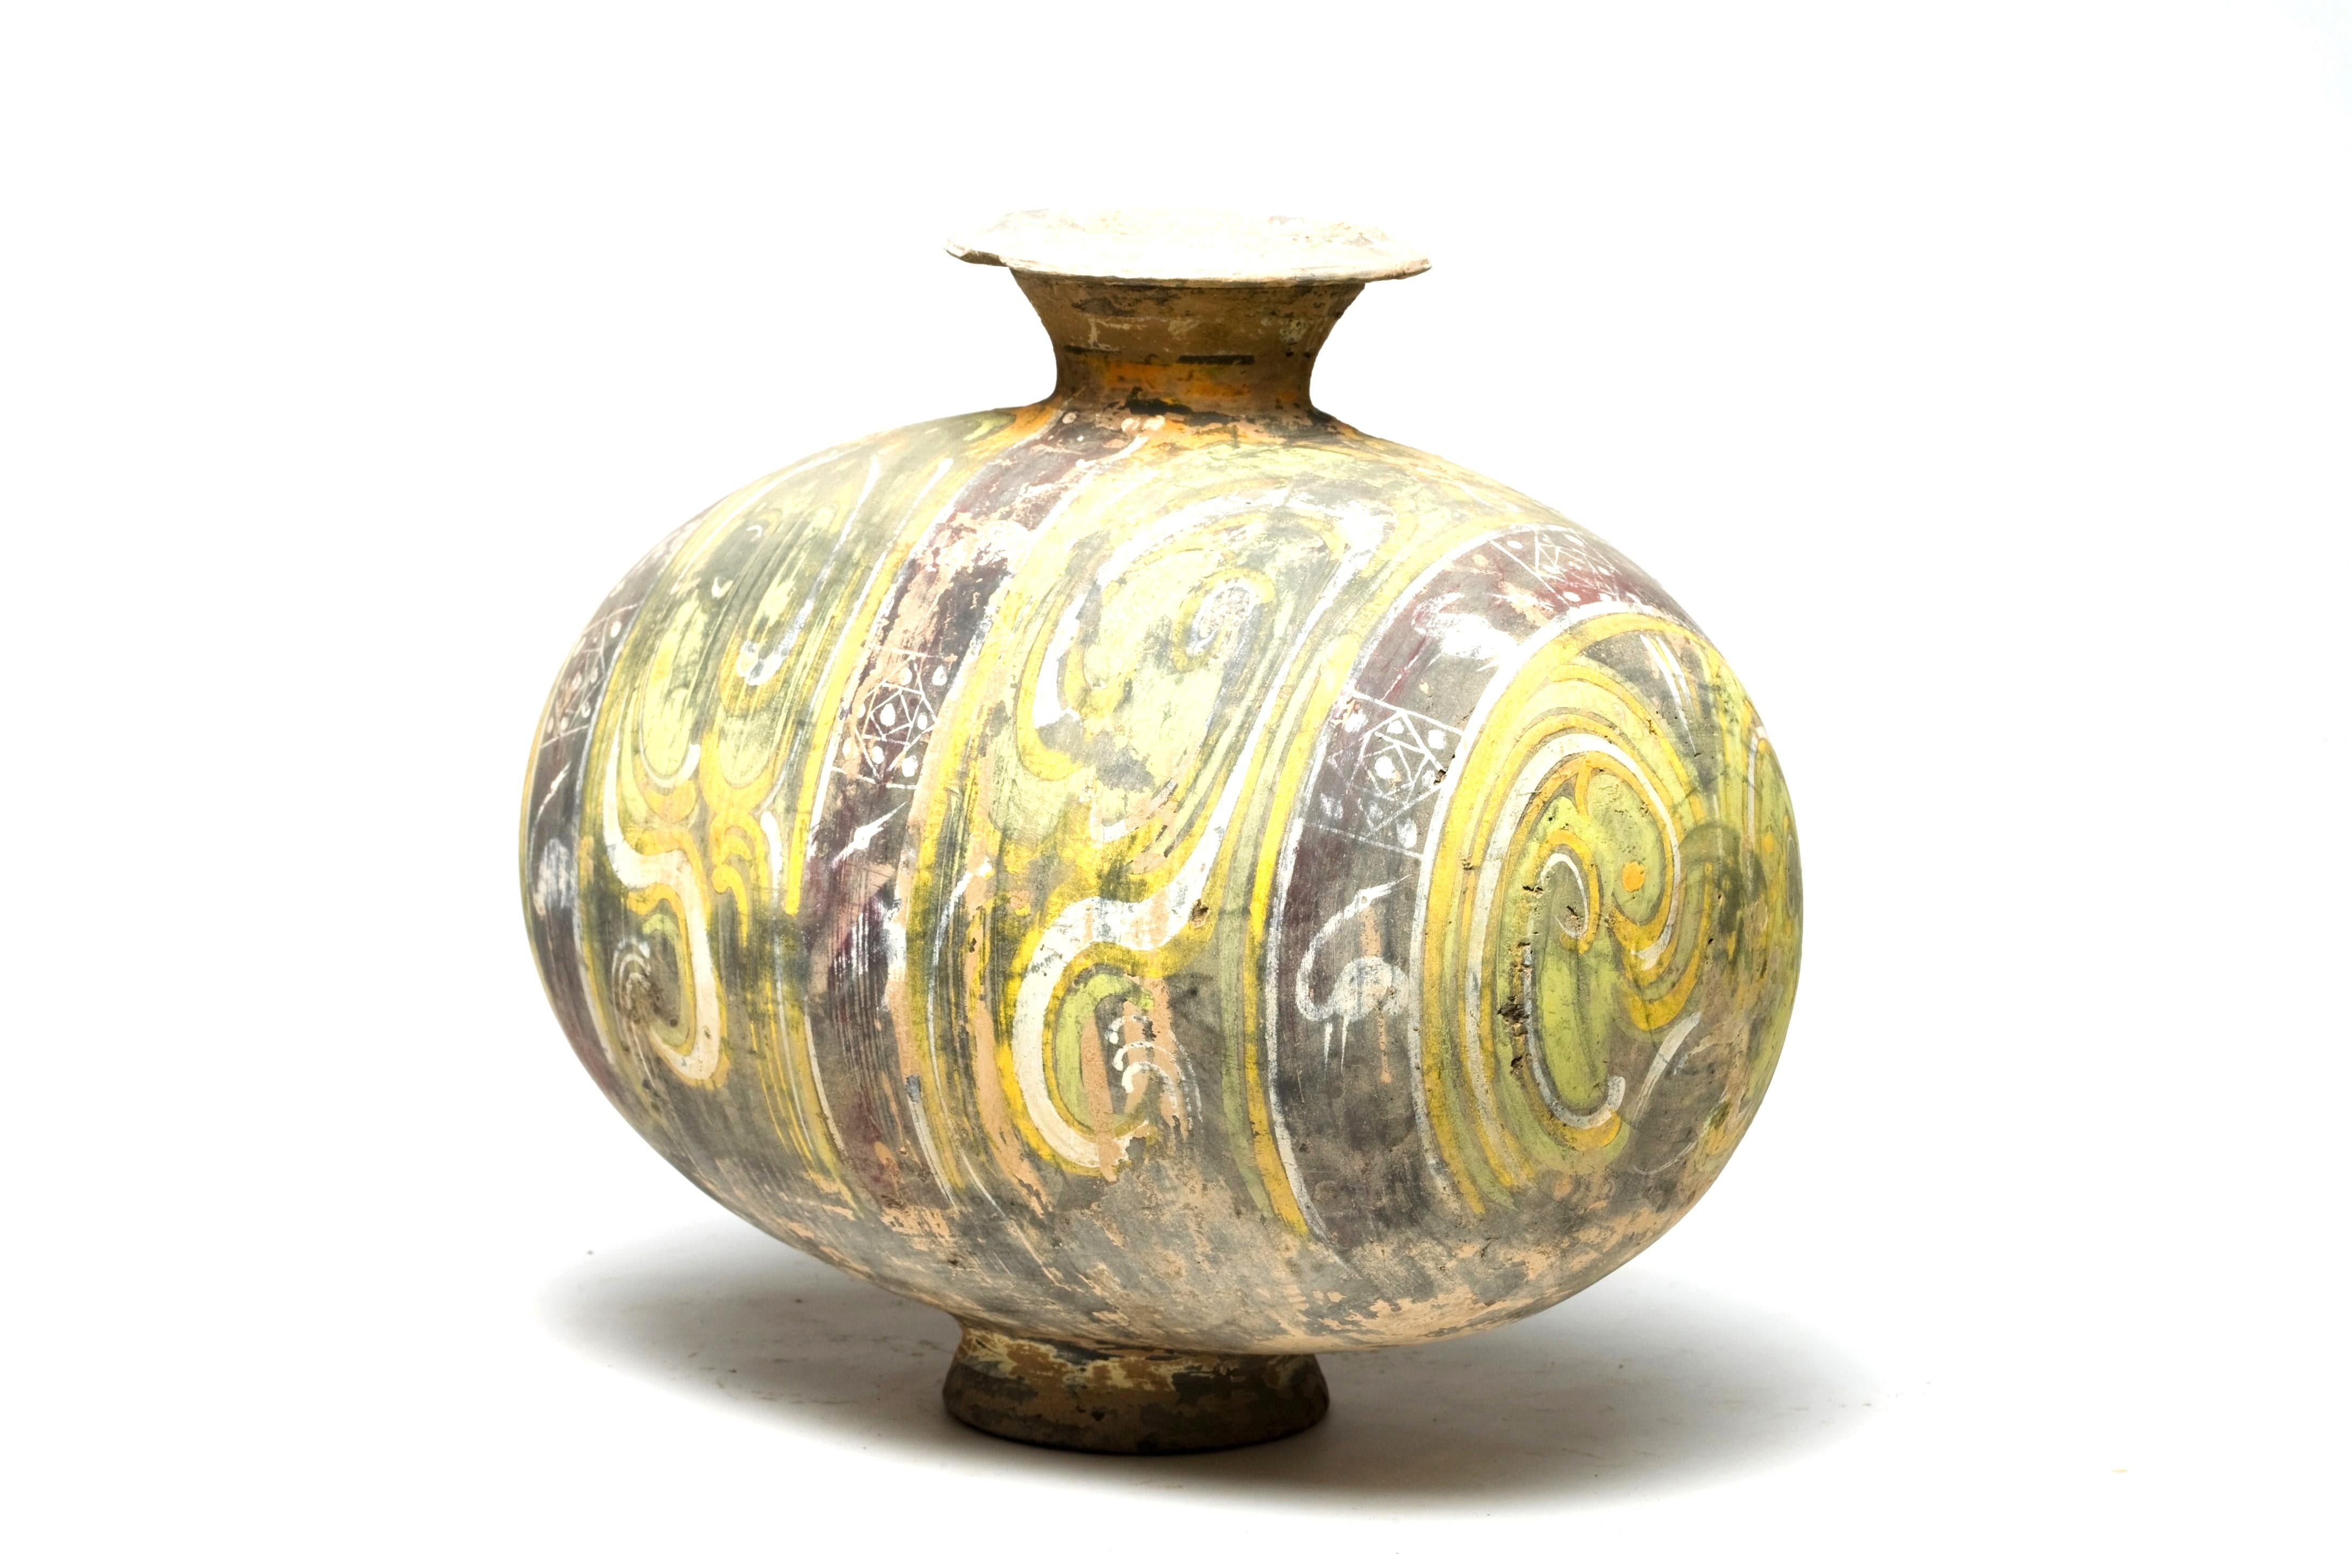 Dieses gelbe, gut erhaltene Gefäß diente als Grabbeigabe (mingqi), die die wertvolleren Bronze- und Lackgefäße des täglichen Lebens ersetzte. Zusammen mit einer Vielzahl anderer Grabbeigaben, Begleitfiguren und Tieren sollten solche reich verzierten